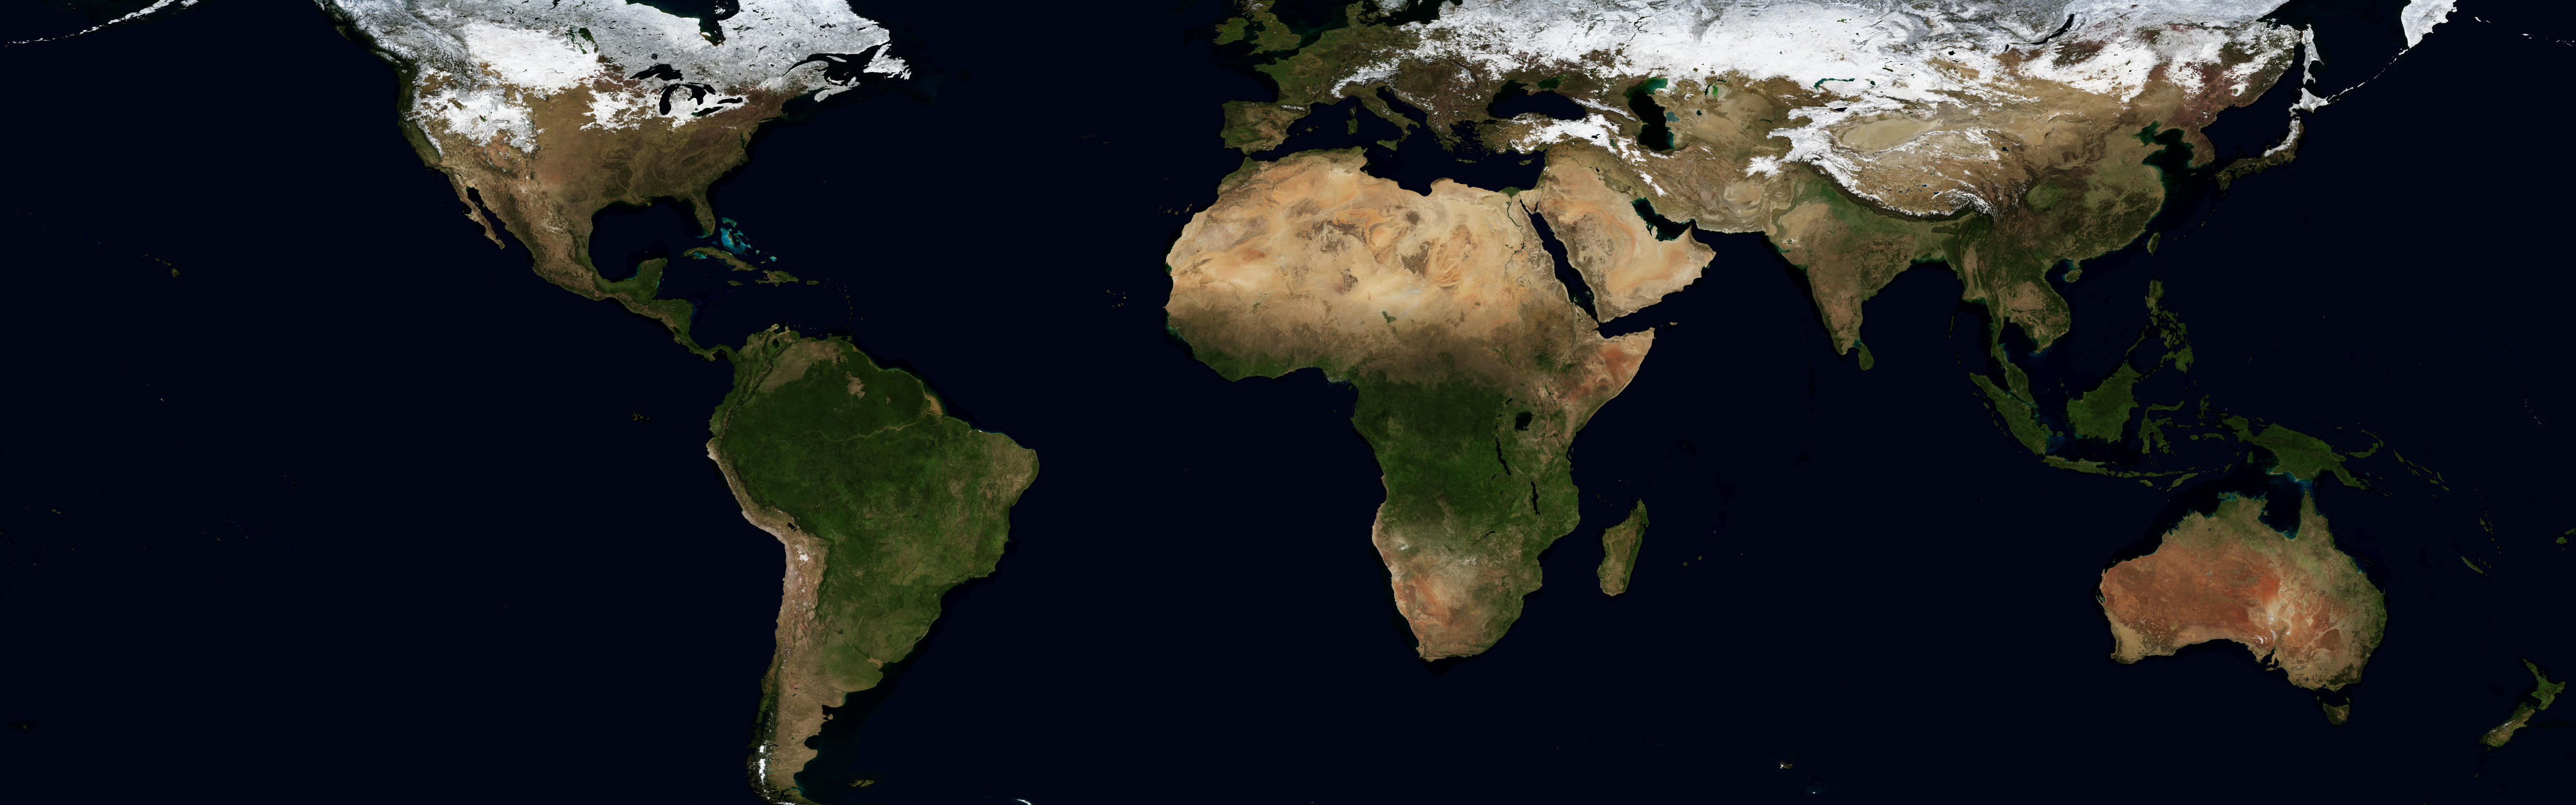 космическое пространство, Земля, карта мира - обои на рабочий стол